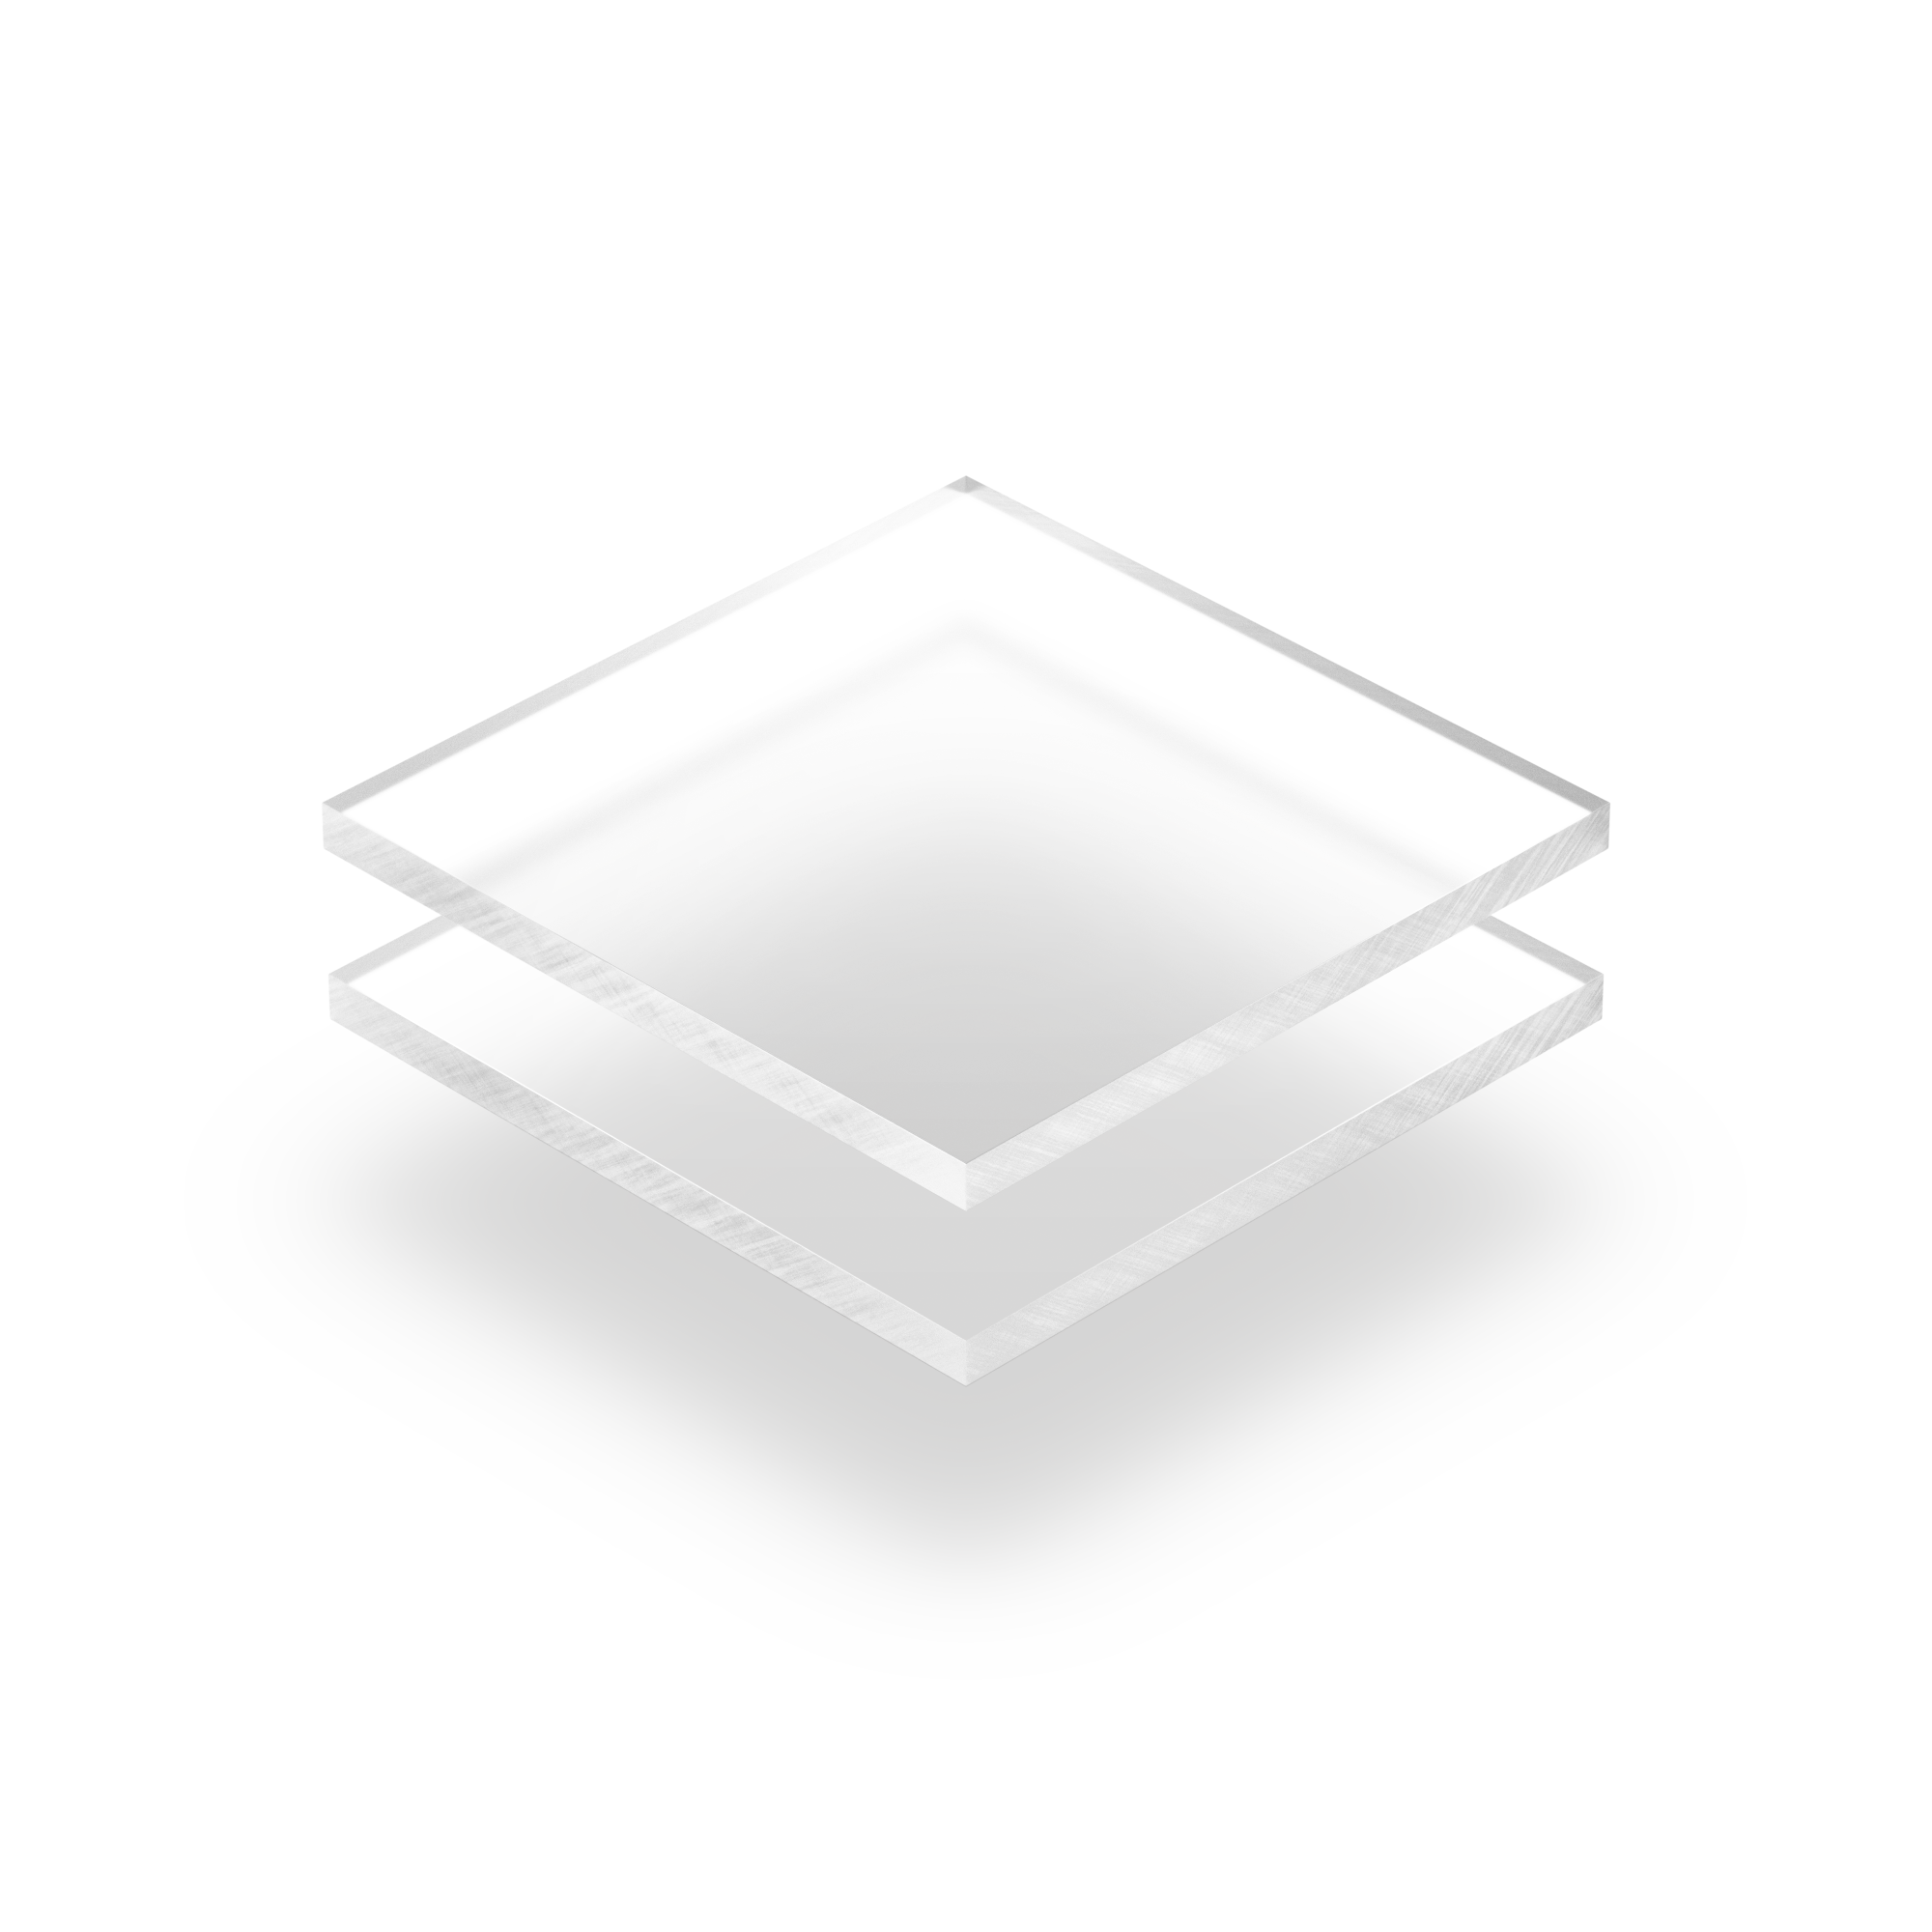 https://plaqueplastique.be/wp-content/uploads/2015/04/Plaque-Plexiglass-givre-transparent.png